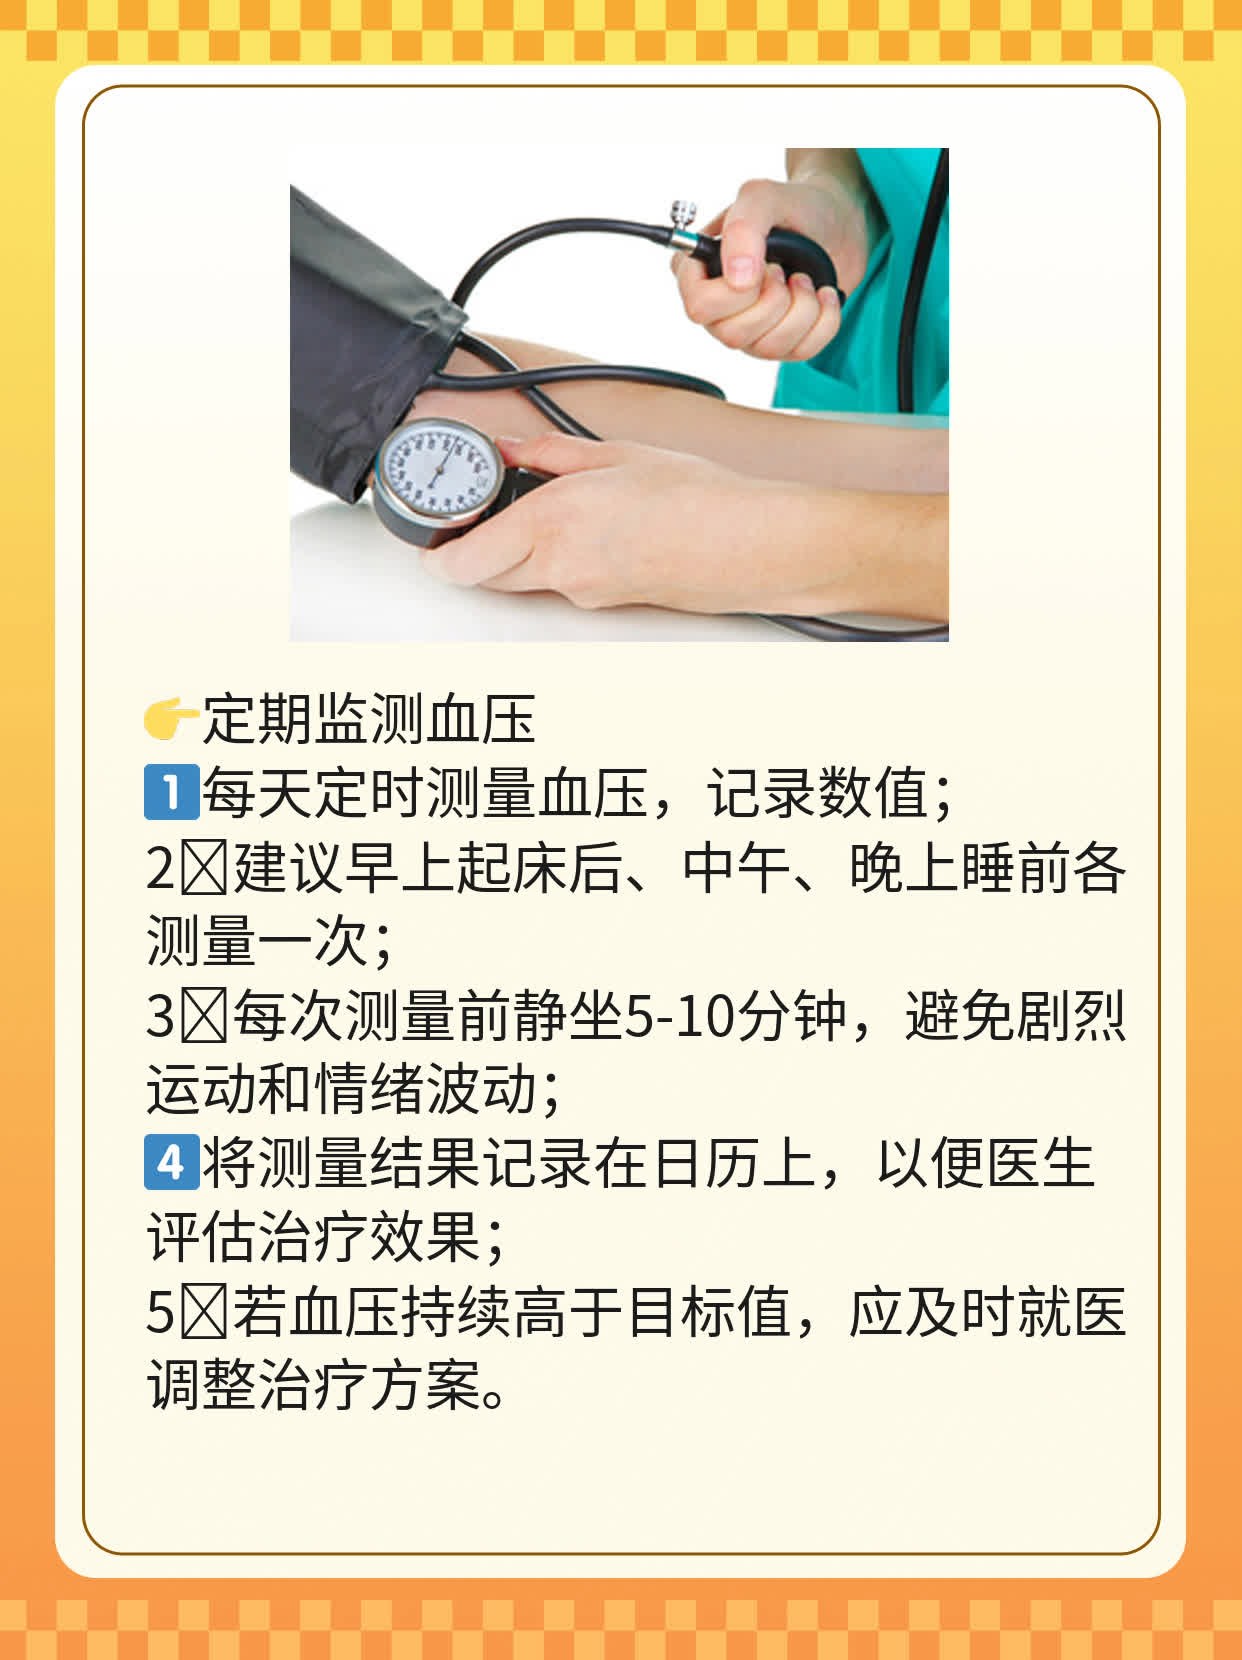 「高血压用药指南」：了解各类药物及代表药